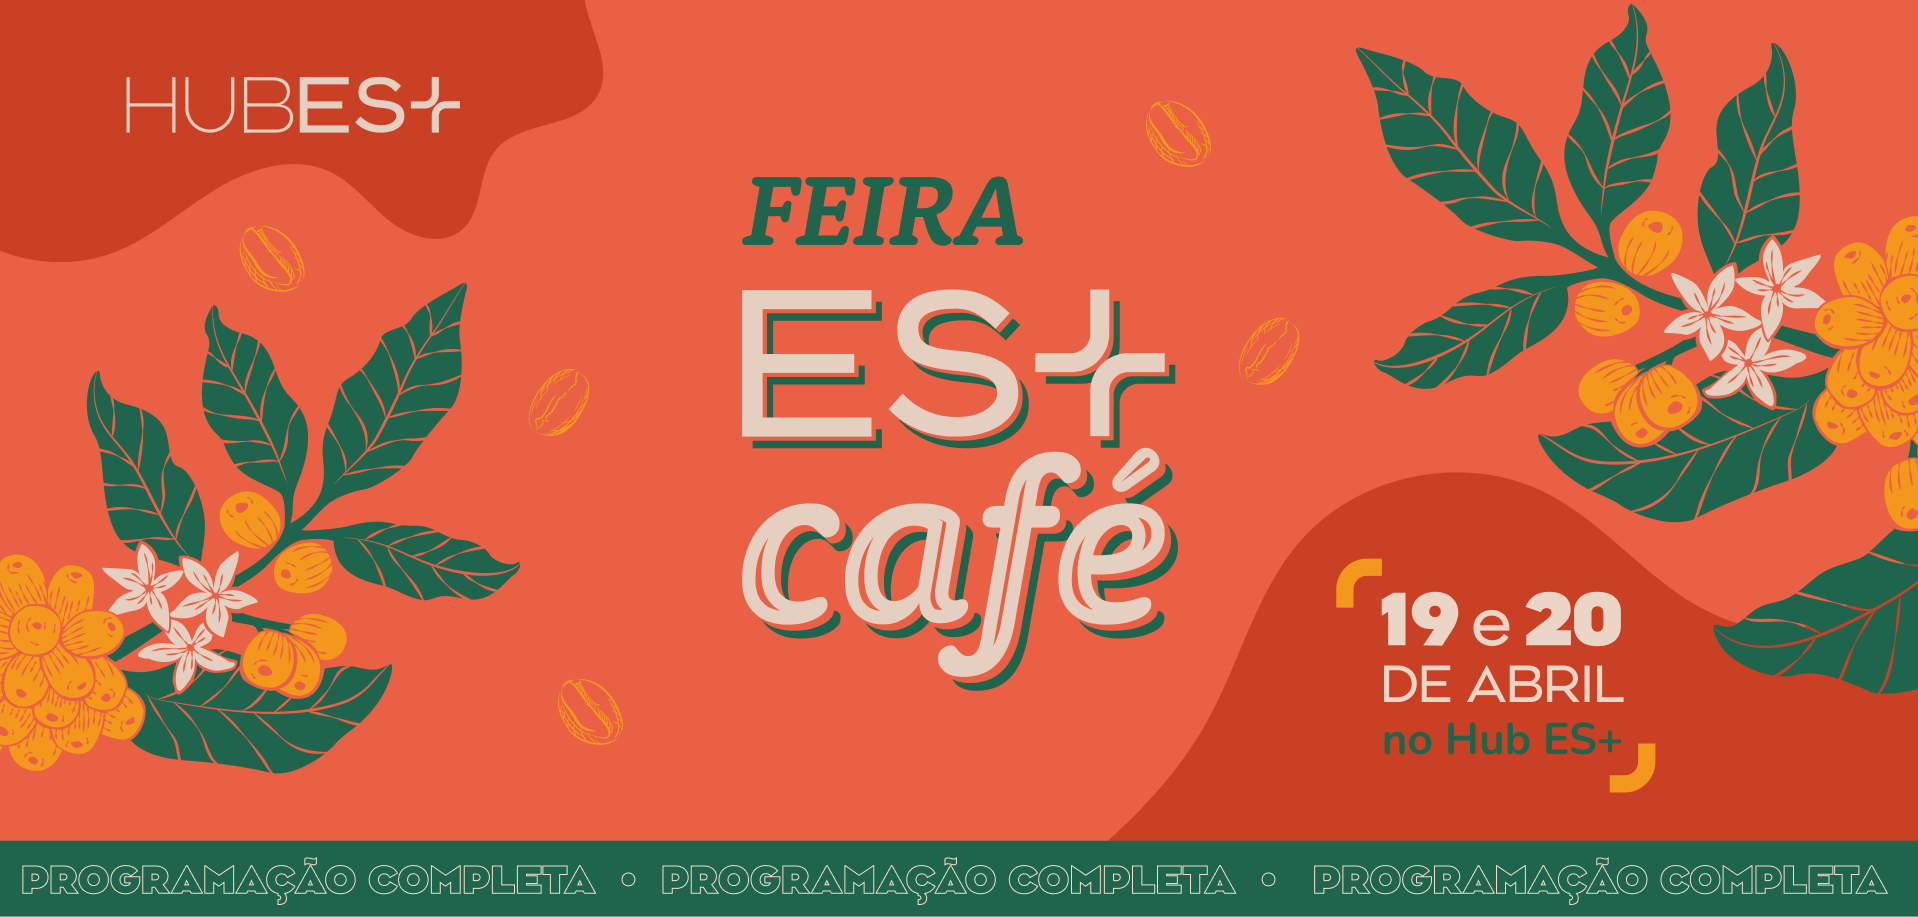 Banner da Feira ES+ Café, contendo a logo do Hub ES+ e data do evento (19 e 20/04/2024)